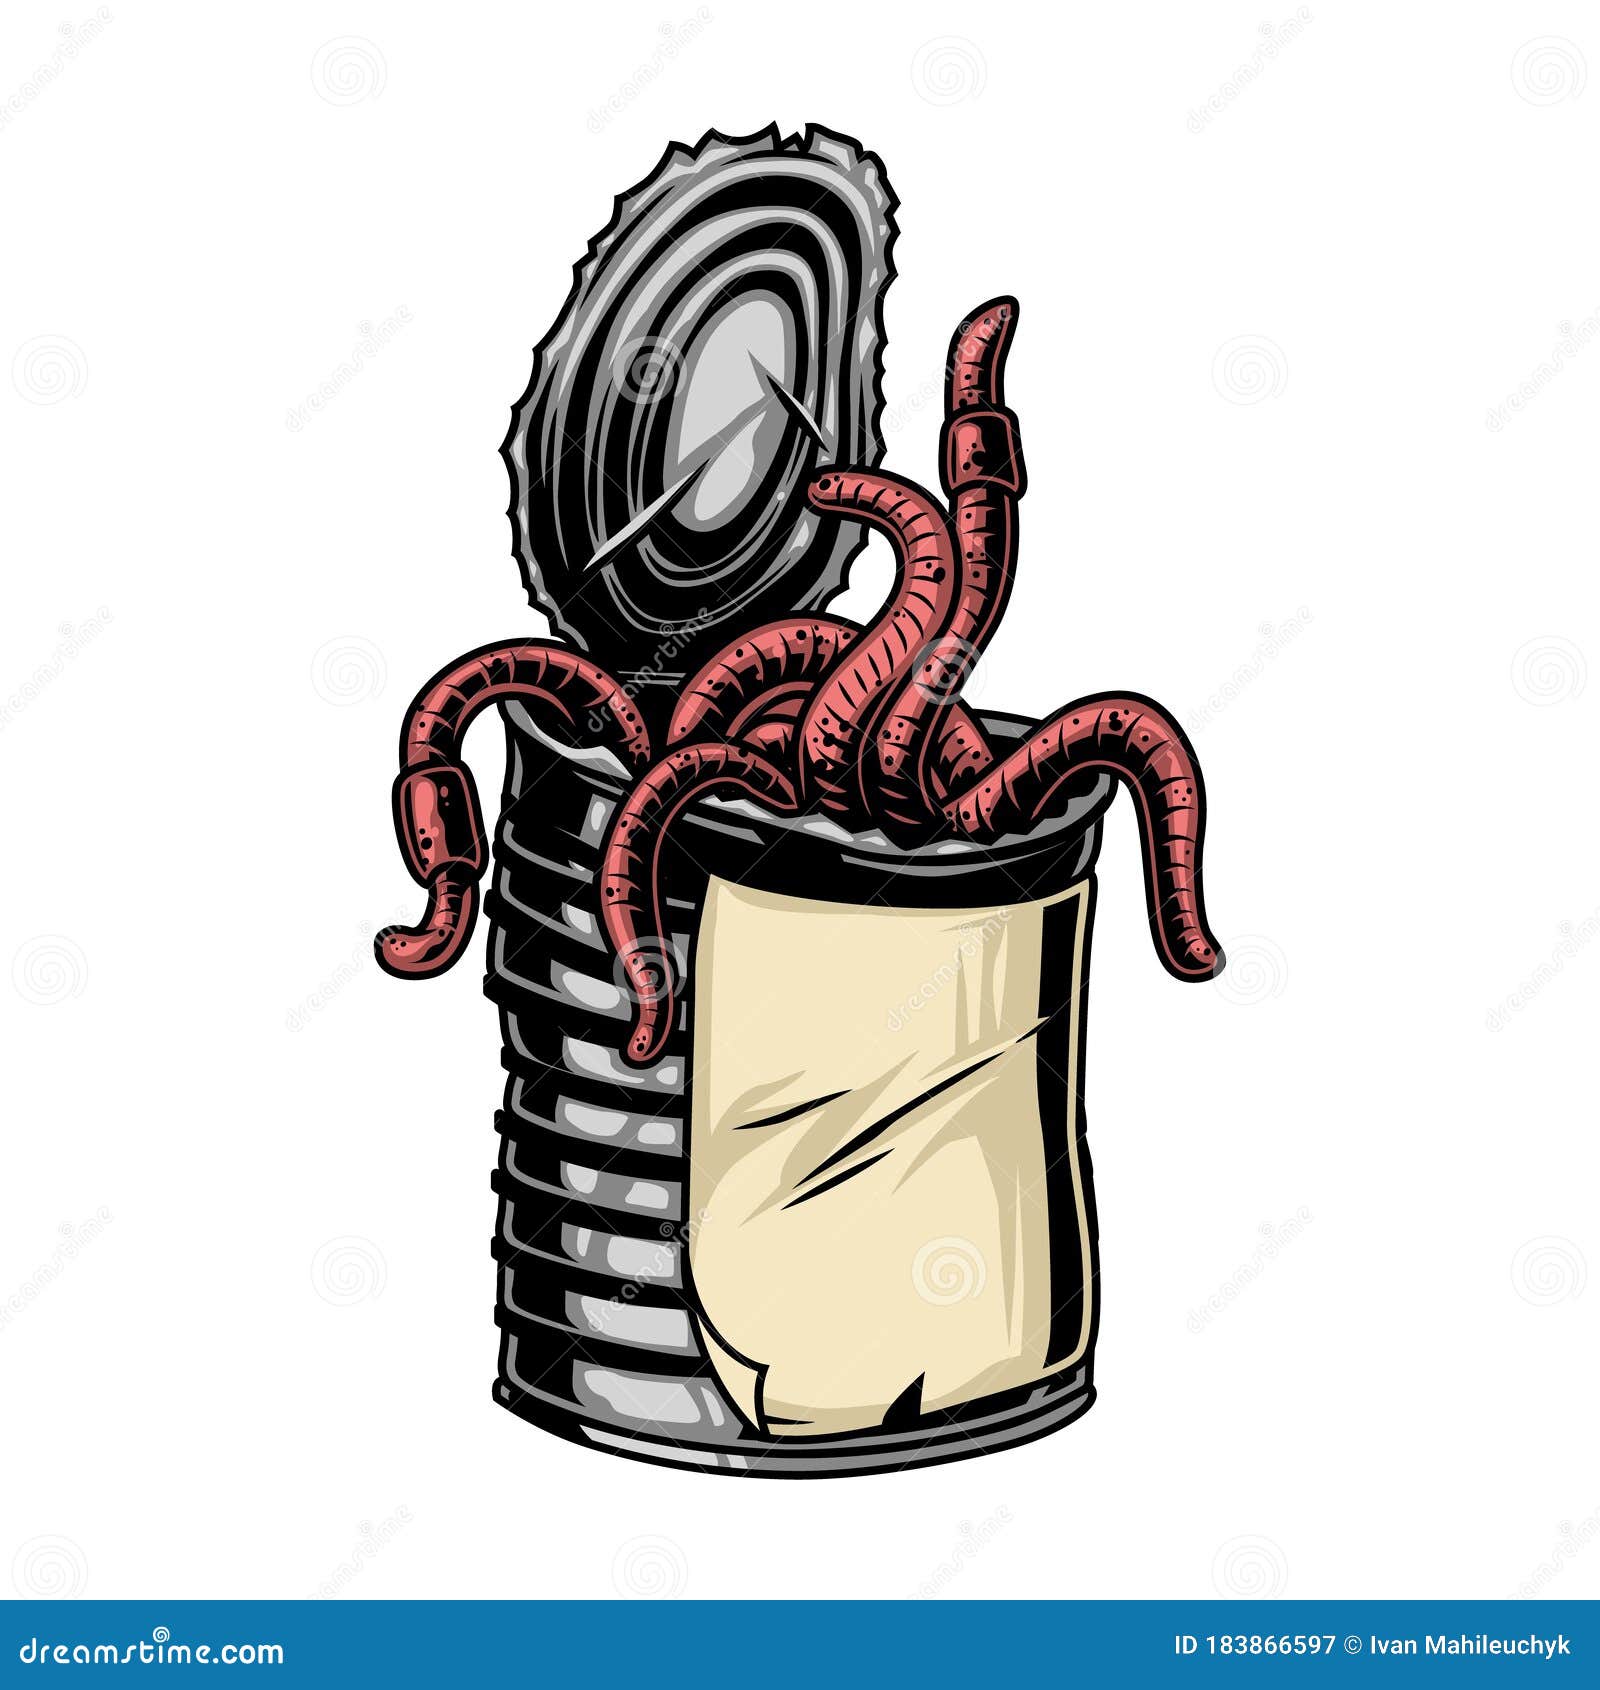 Fishing Worms Stock Illustrations – 589 Fishing Worms Stock Illustrations,  Vectors & Clipart - Dreamstime